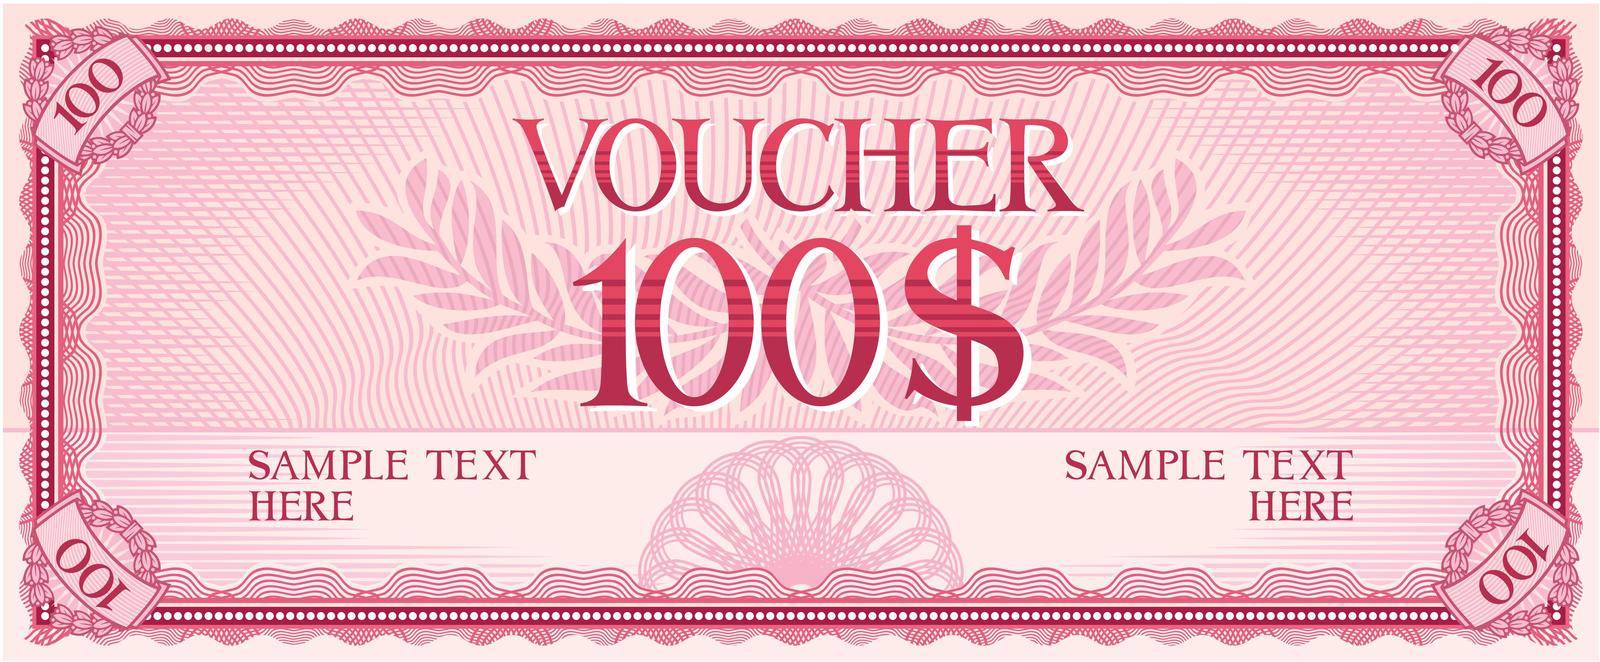 Voucher design - hundred dollars (template)